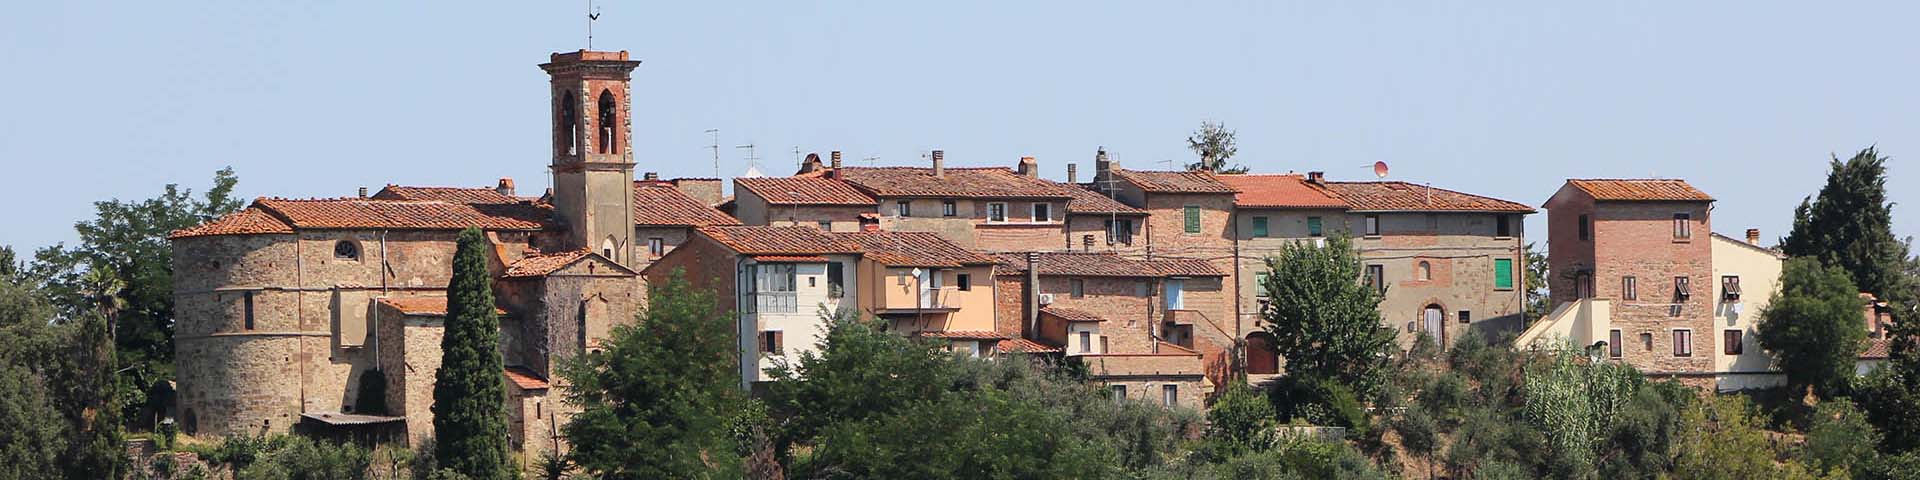 Valdera - Montecchio